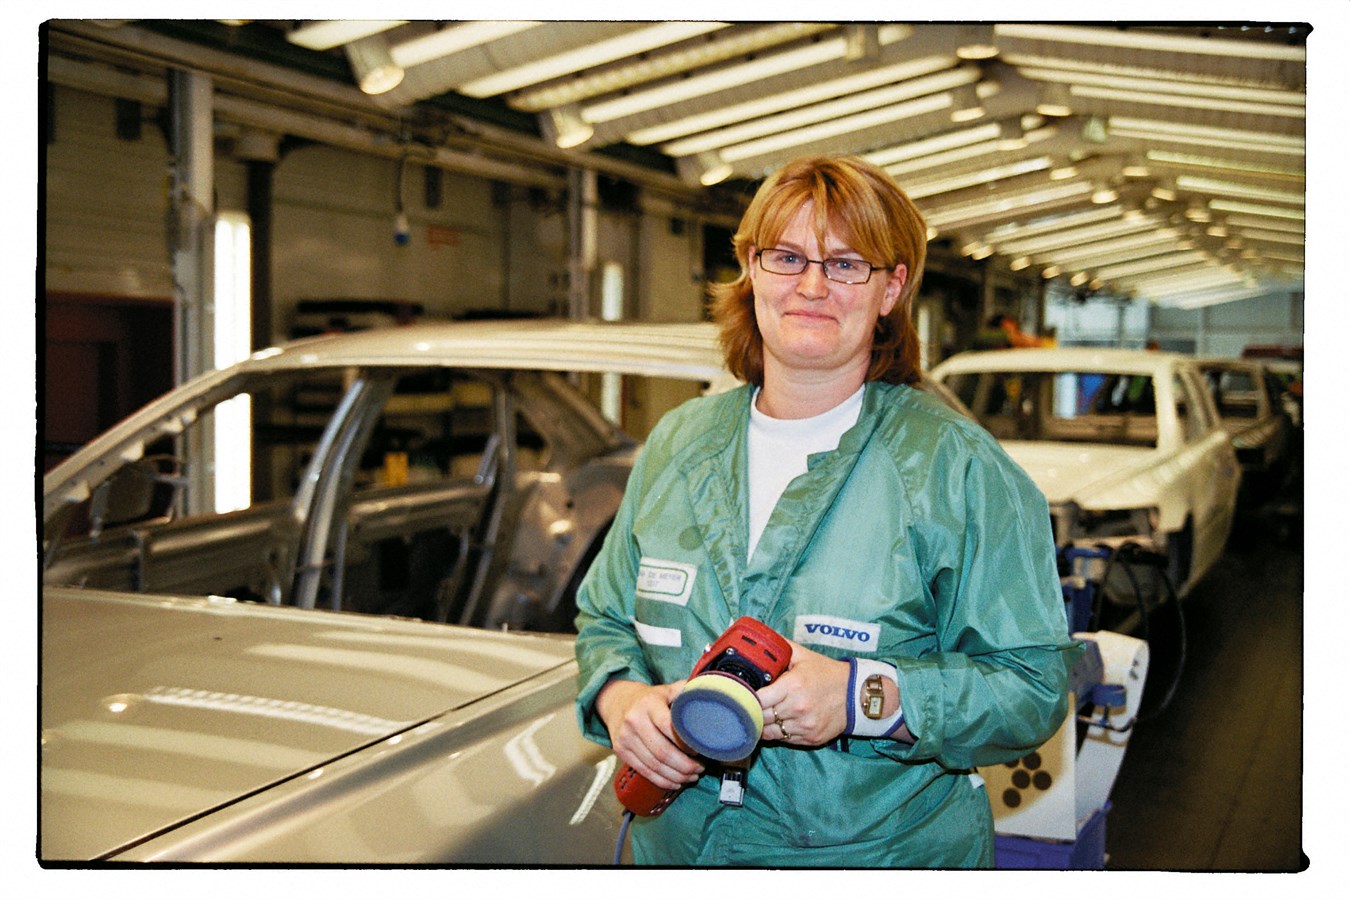 Tania De Meyer lavora presso il reparto verniciatura dello stabilimento Volvo Cars situato presso la città belga di Gent